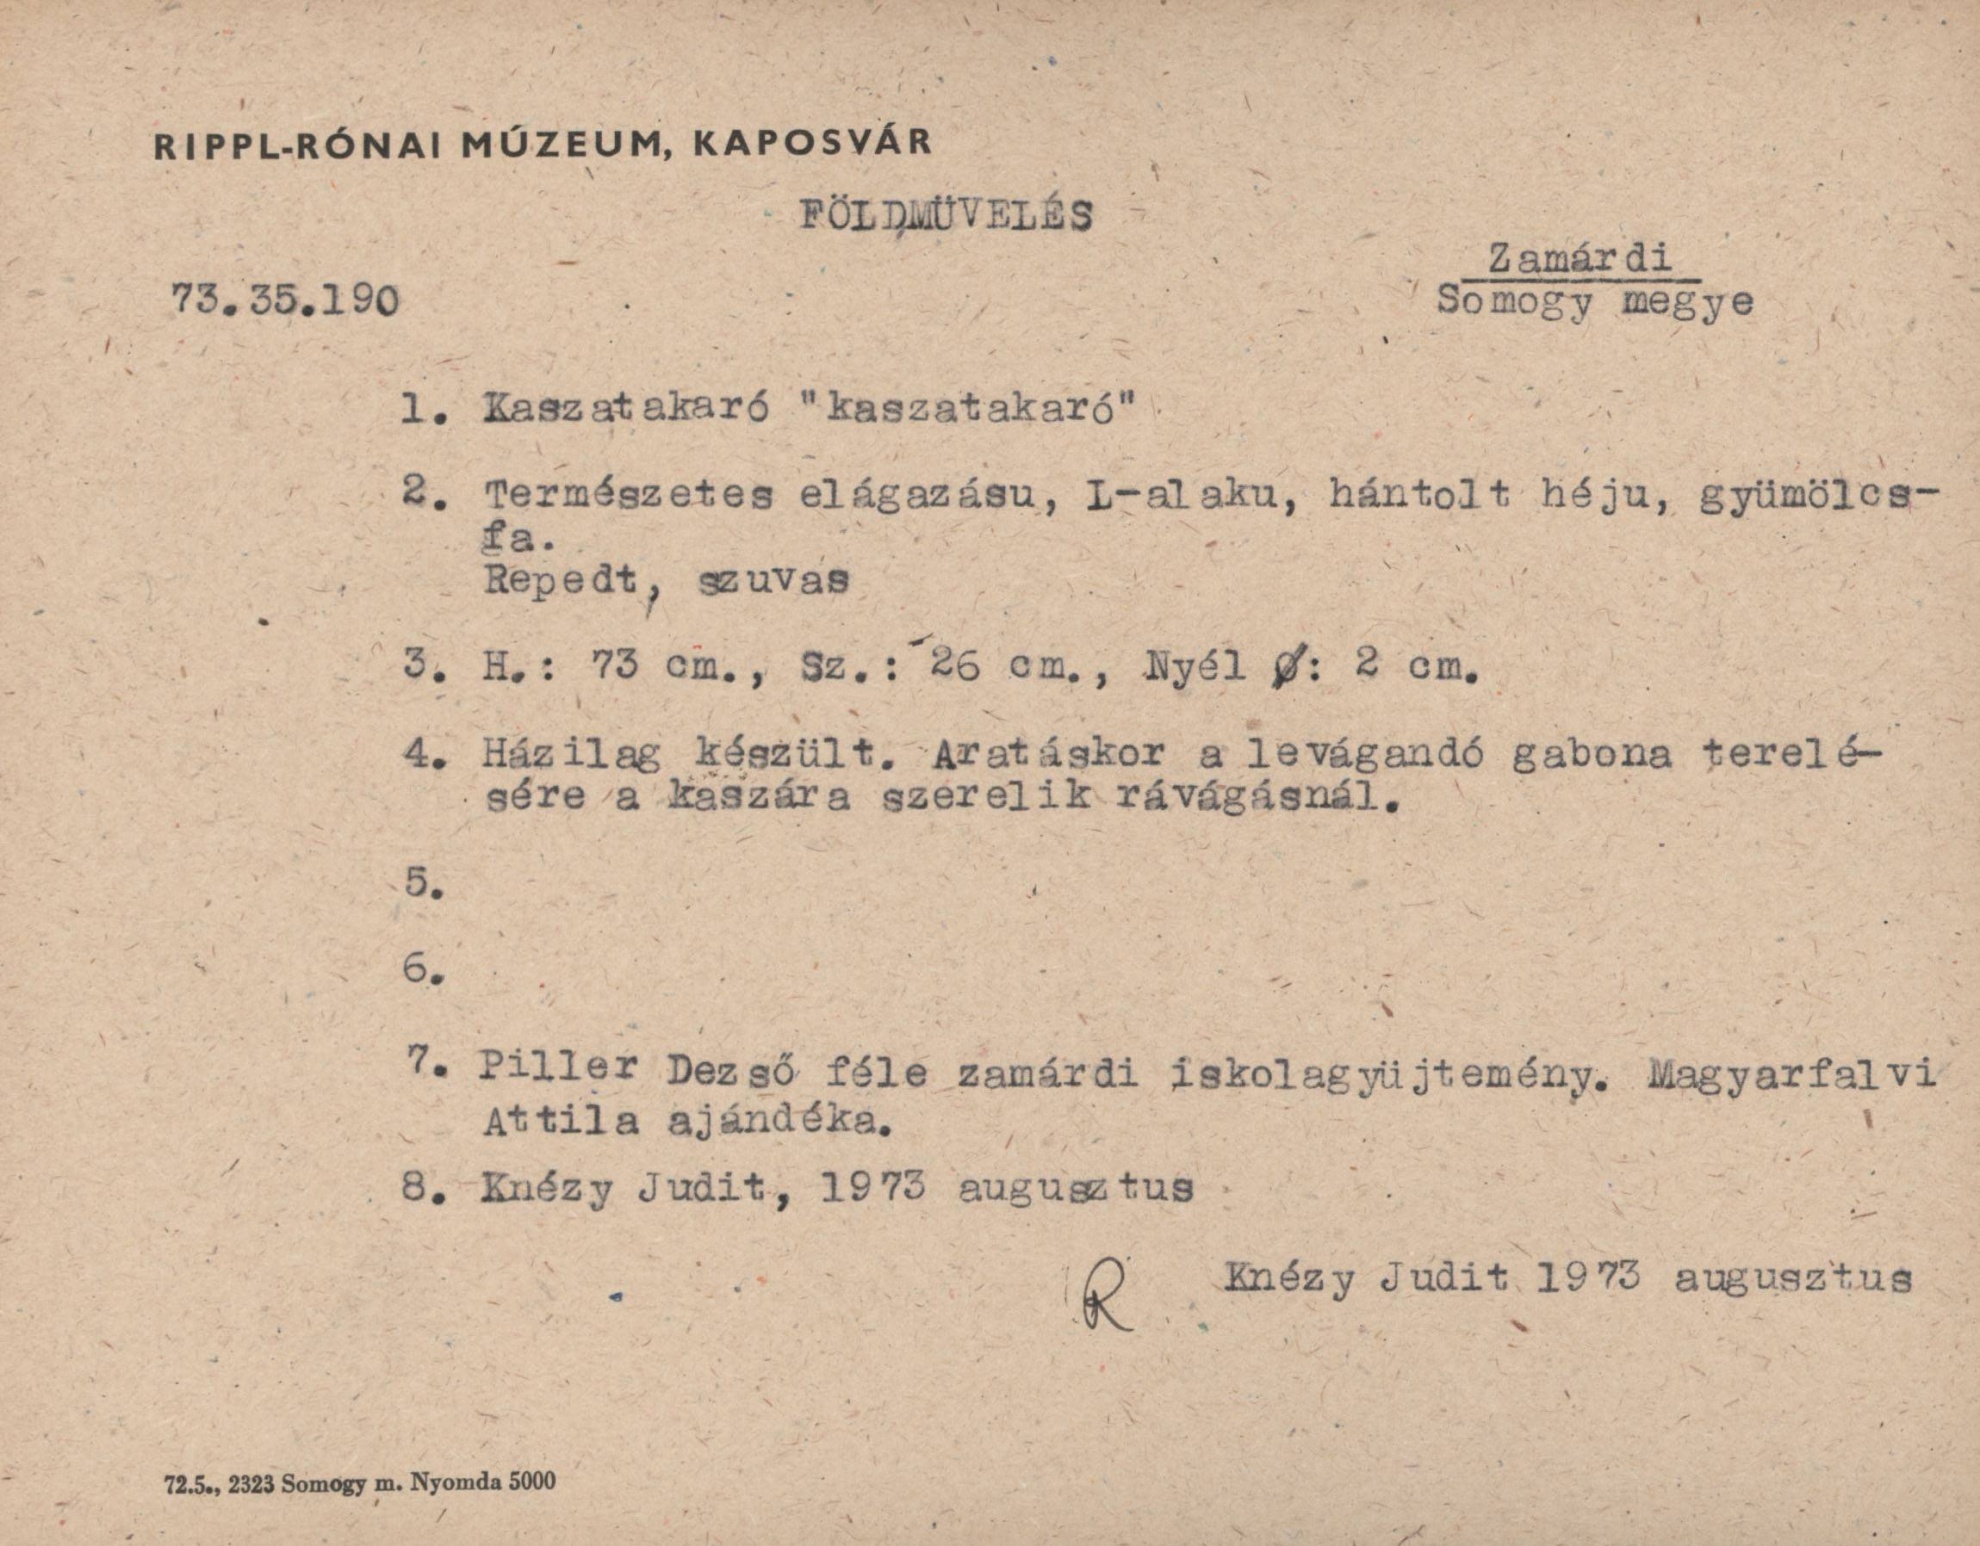 Kaszatakaró "kaszatakaró" (Rippl-Rónai Múzeum CC BY-NC-SA)